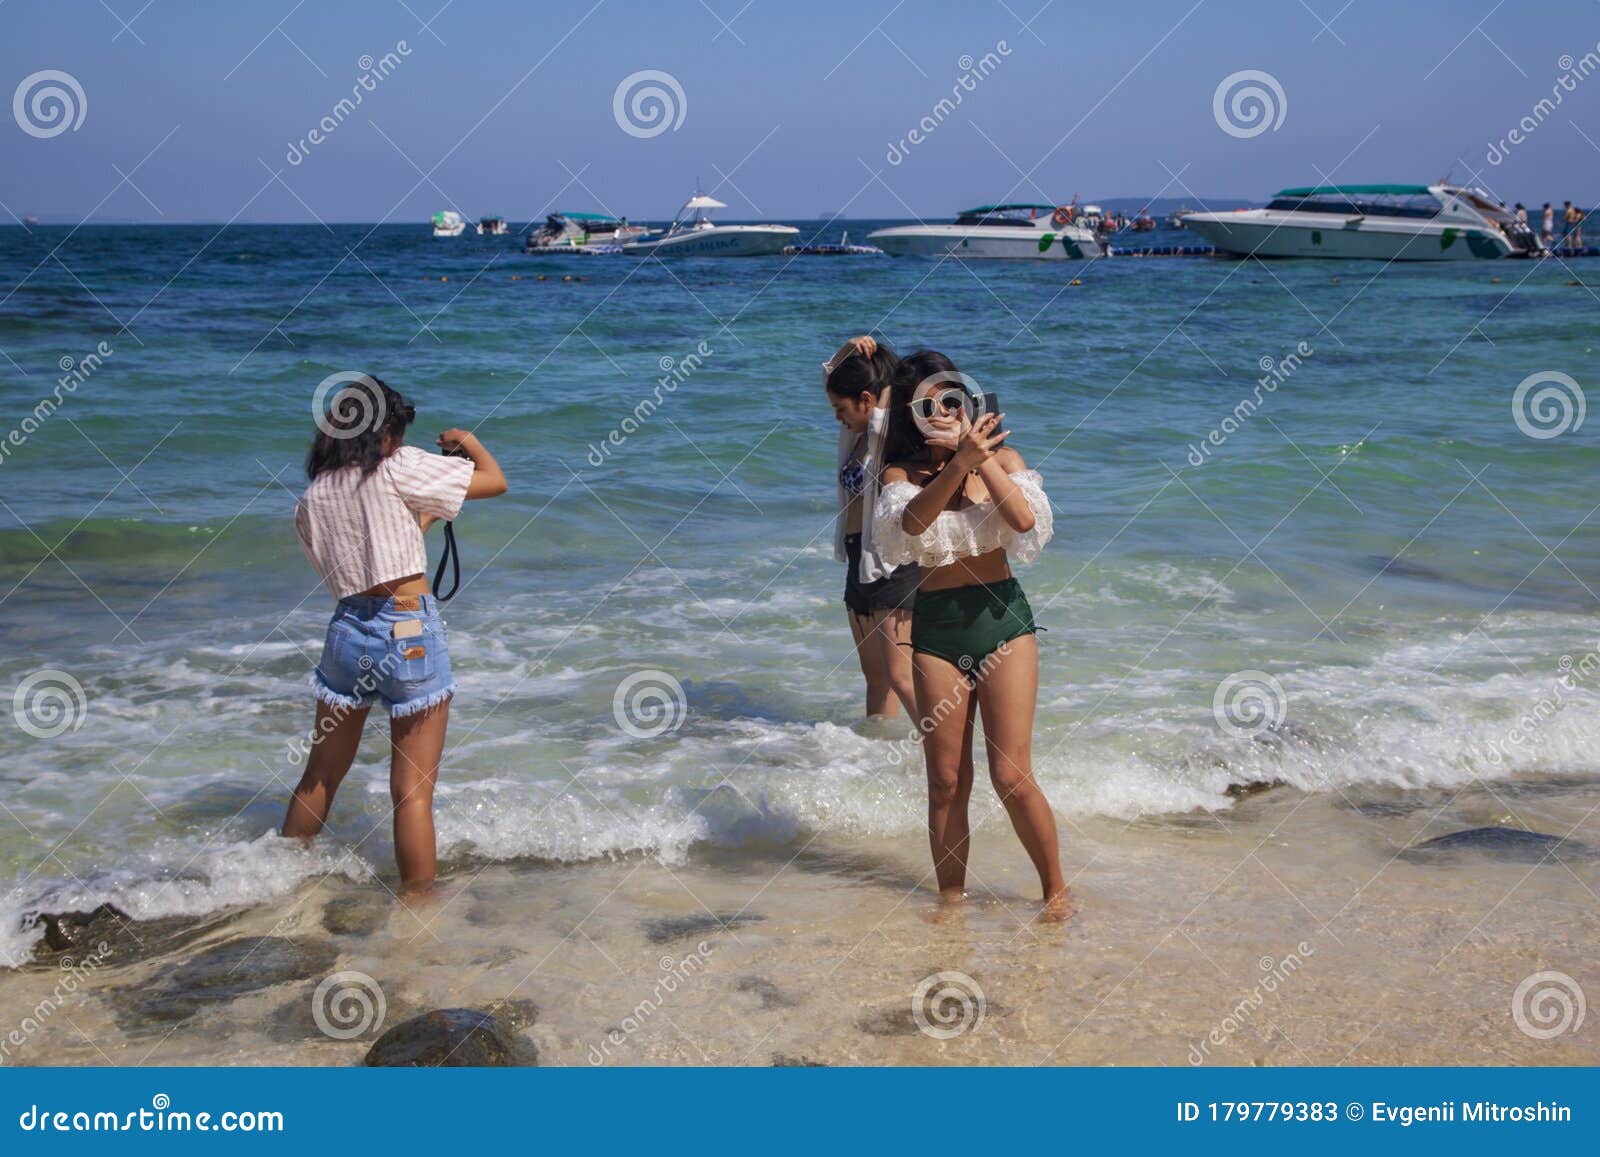 Phuket beach girls